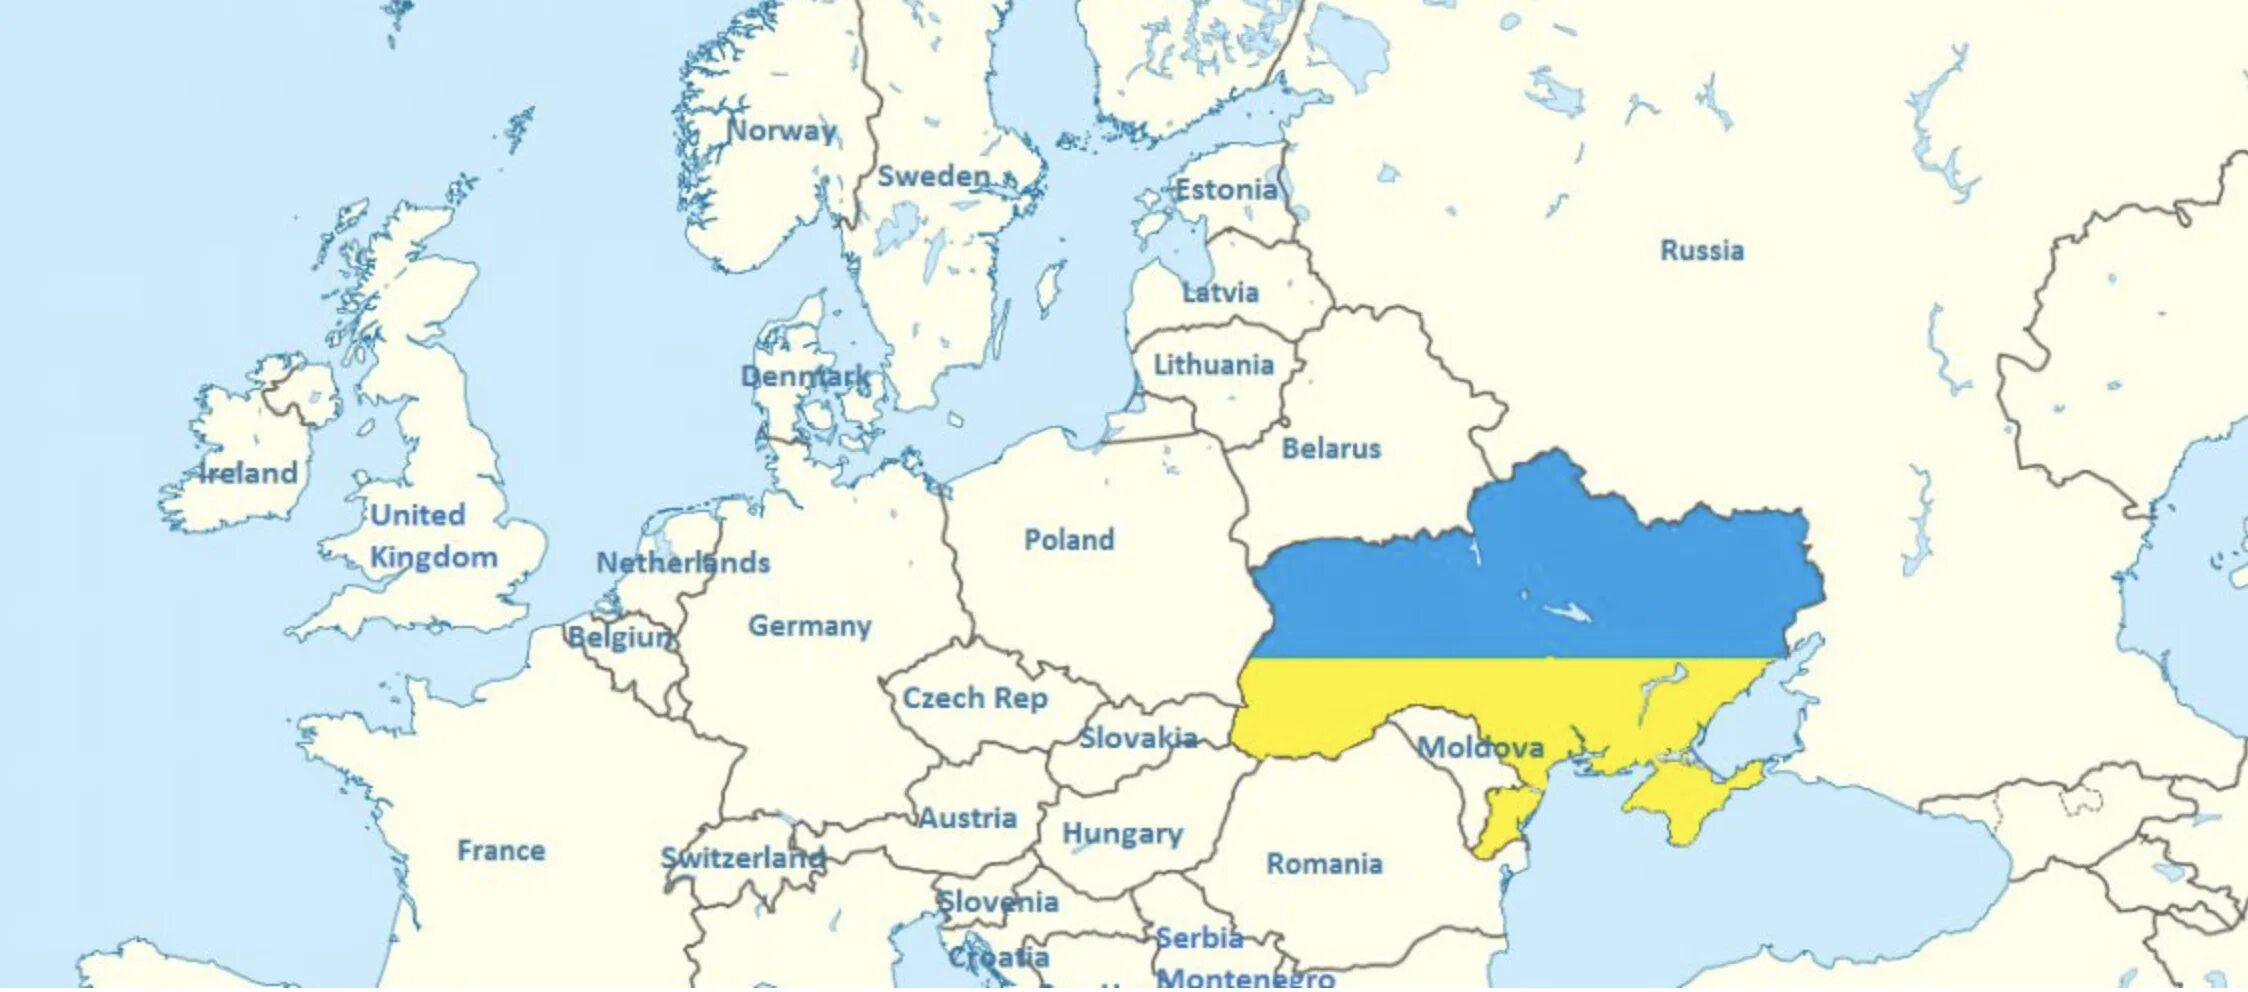 Страны соседи украины. Украина на карте Европы. Украина на картееврлпы. Уераинана карте Европы. Крата украинв и Европы.